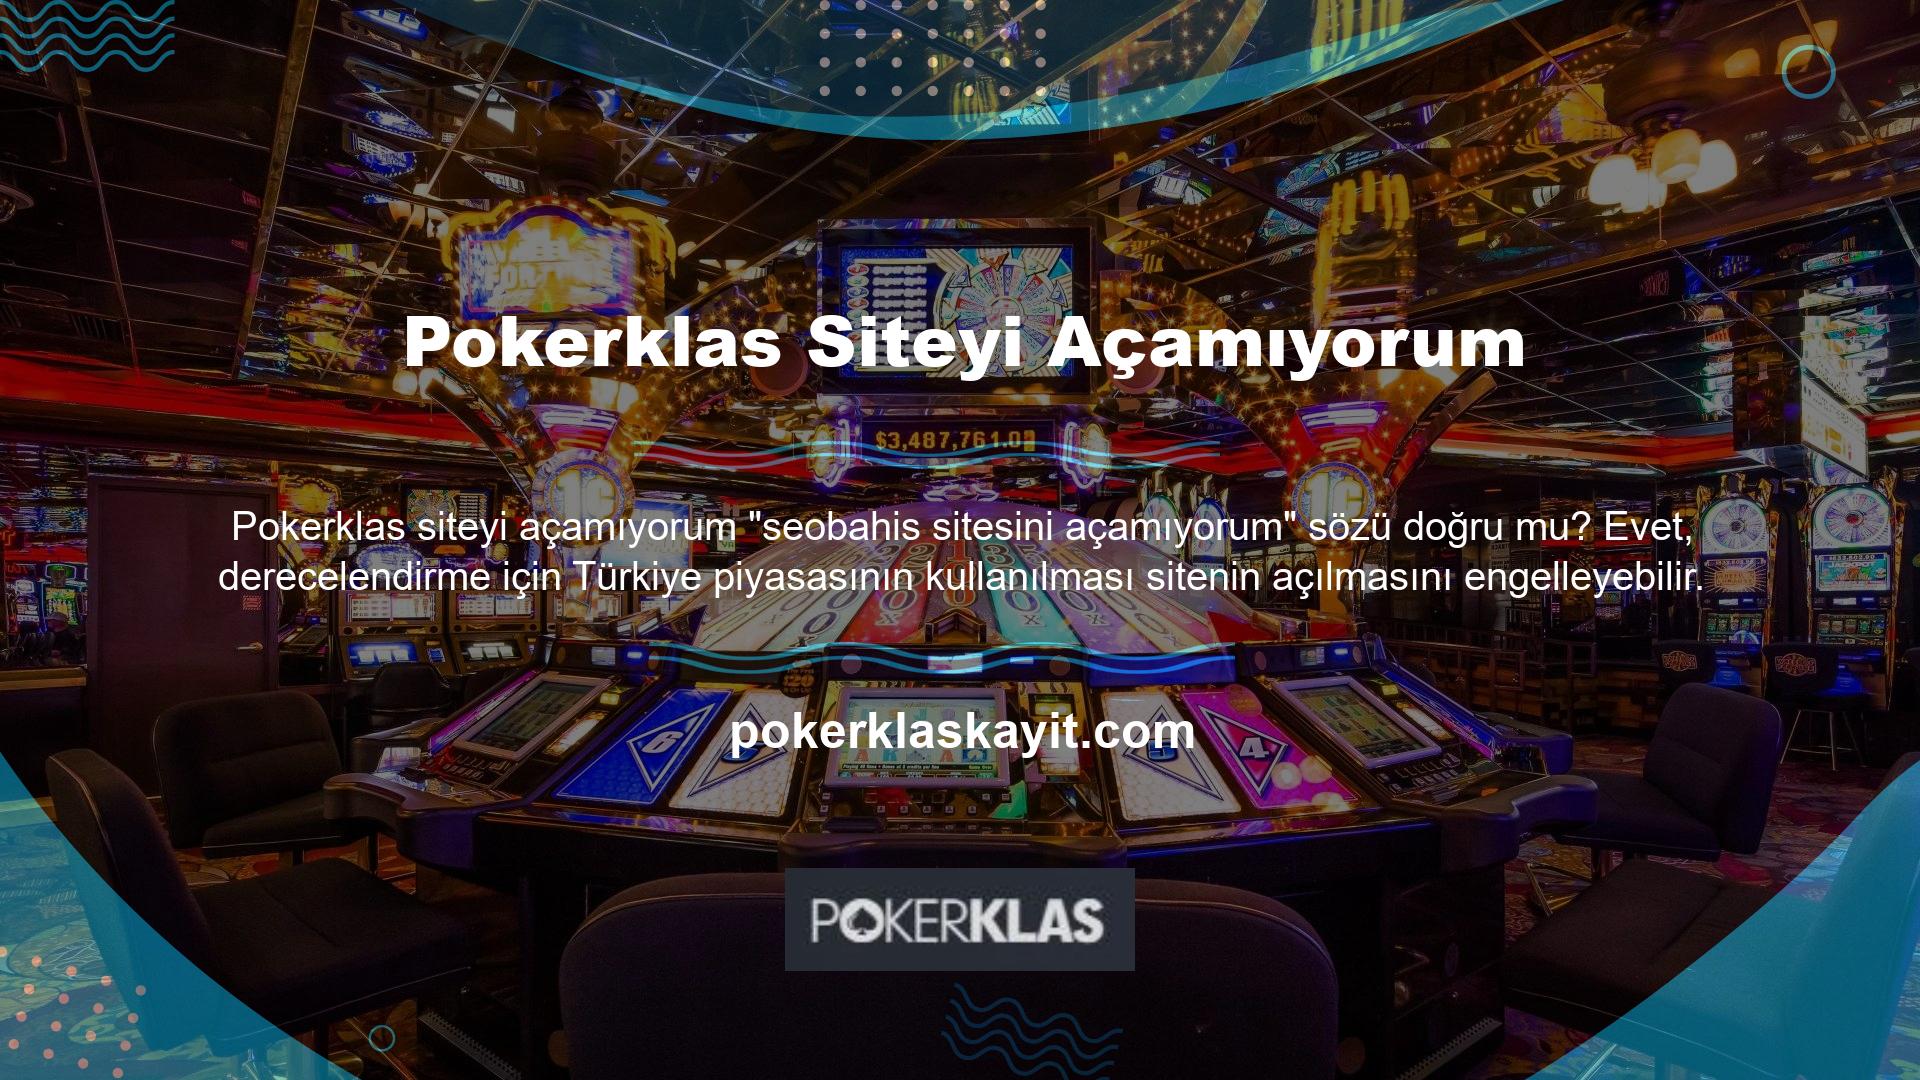 Web sitesi açılamama performansı Pokerklas bağlantı sorunu olarak tanımlanır